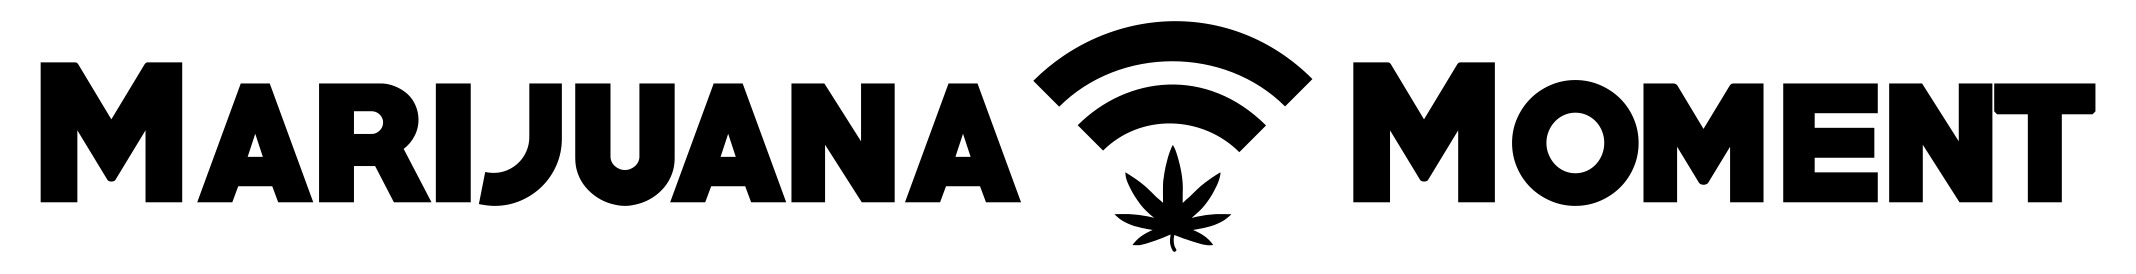 Marijuana Moment logo.